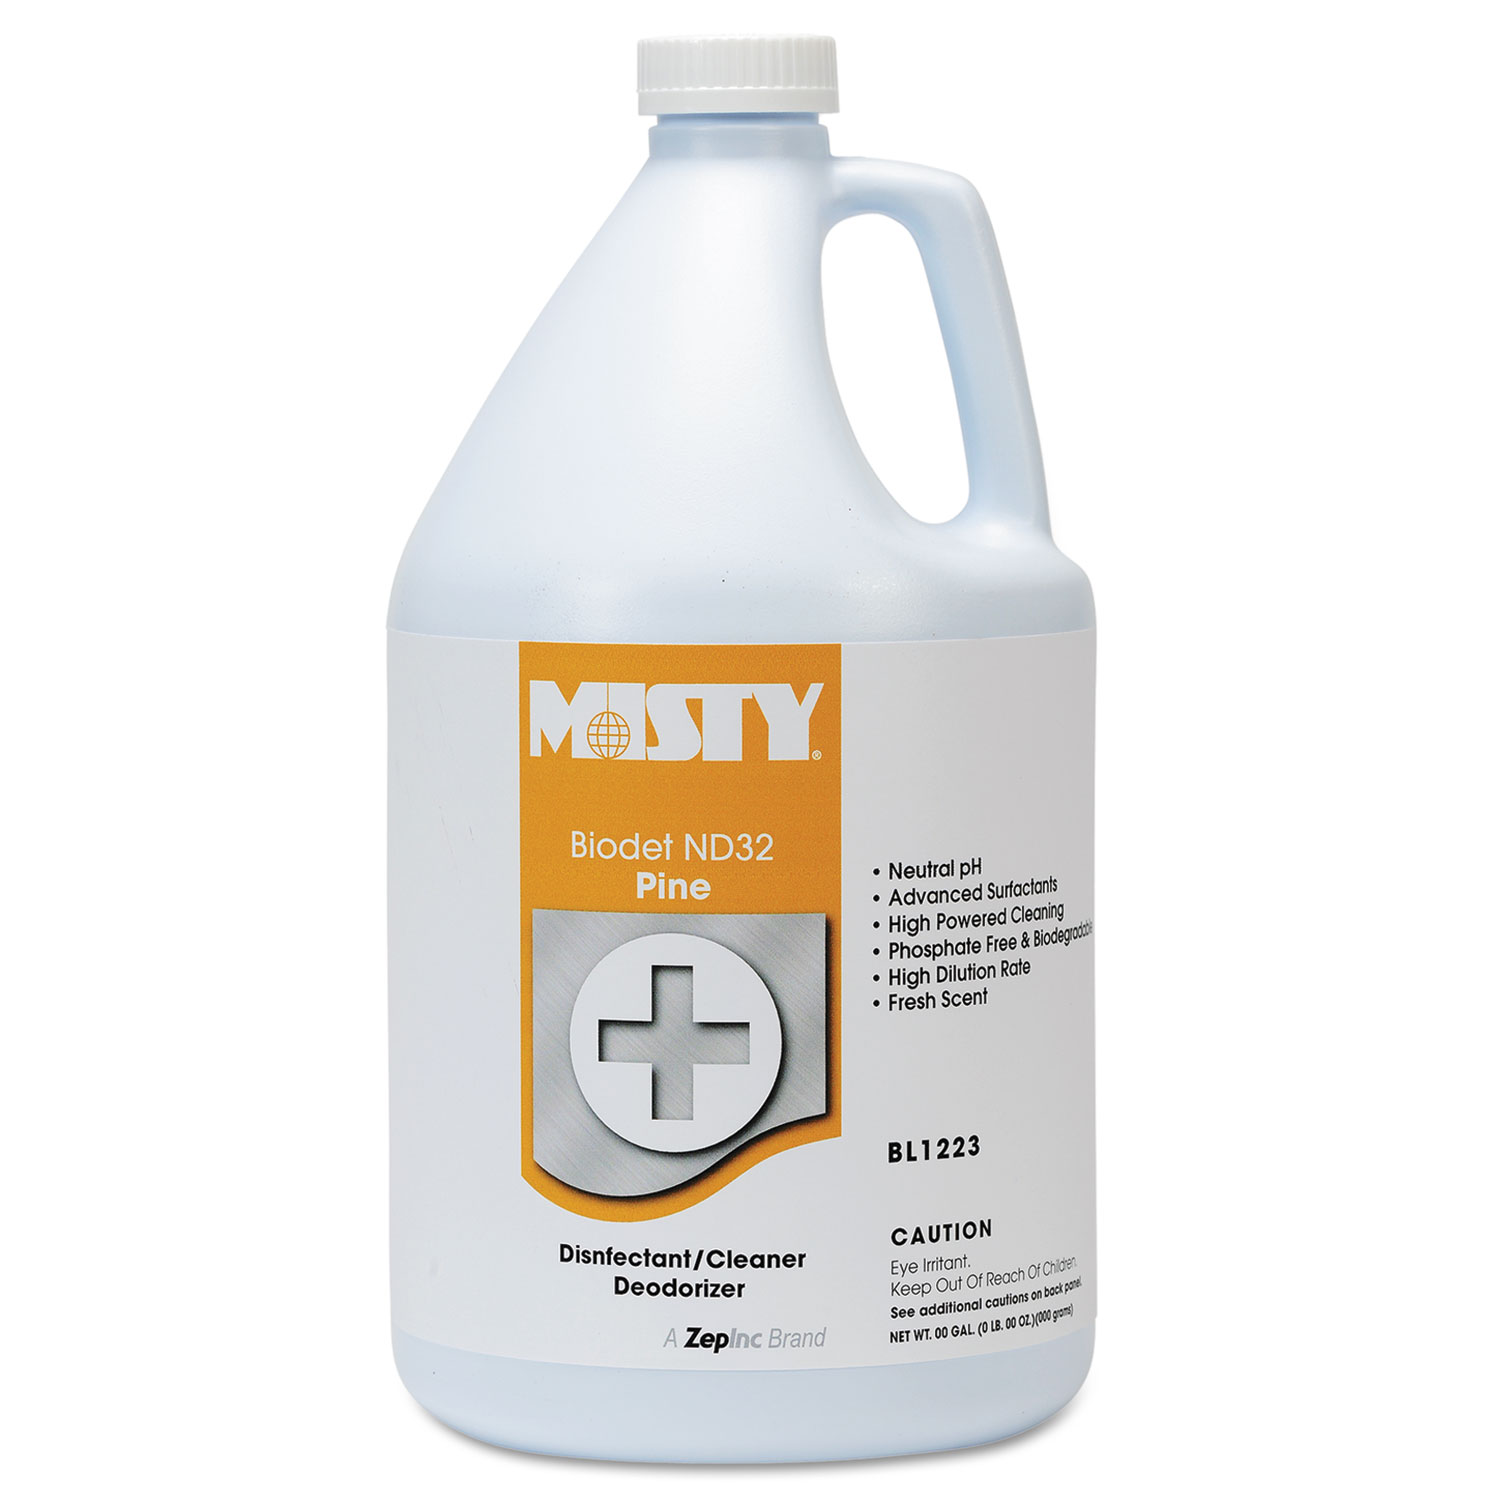  Misty 1038809 BIODET ND-32, Pine, 1gal Bottle, 4/Carton (AMR1038809) 